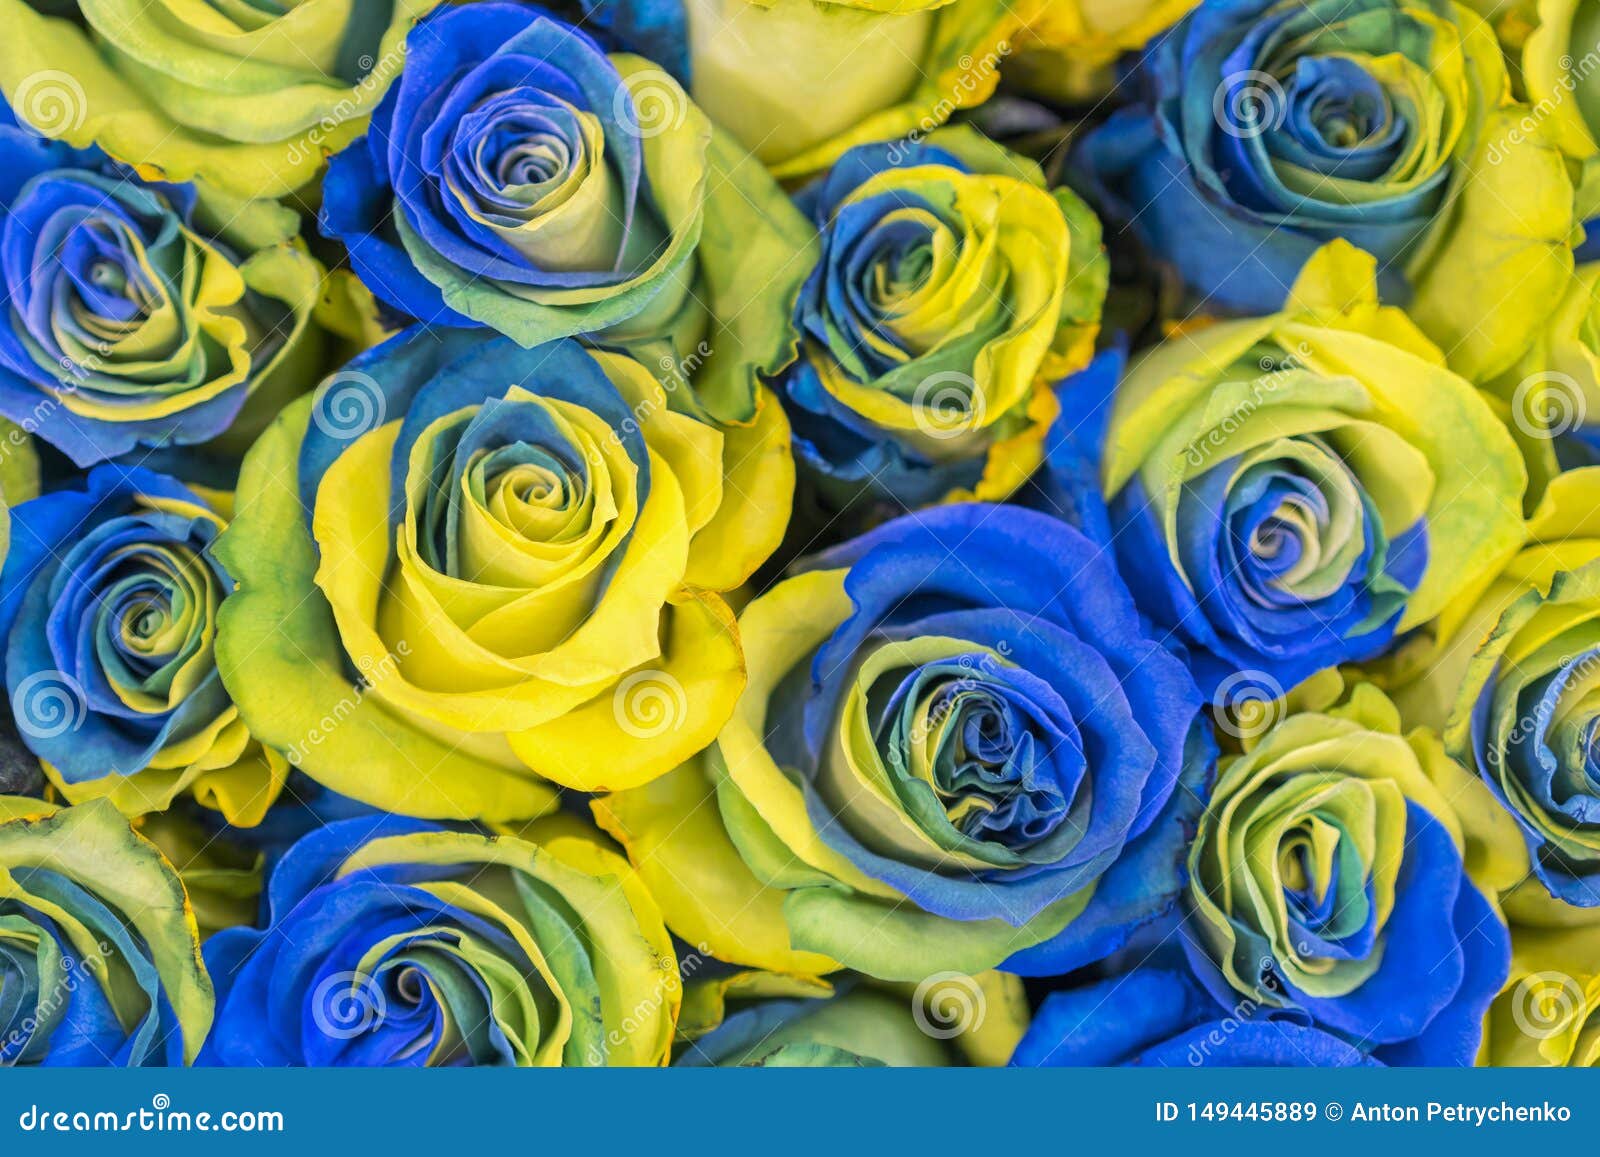 Recopilación imagen 200 rosas amarillas y azules